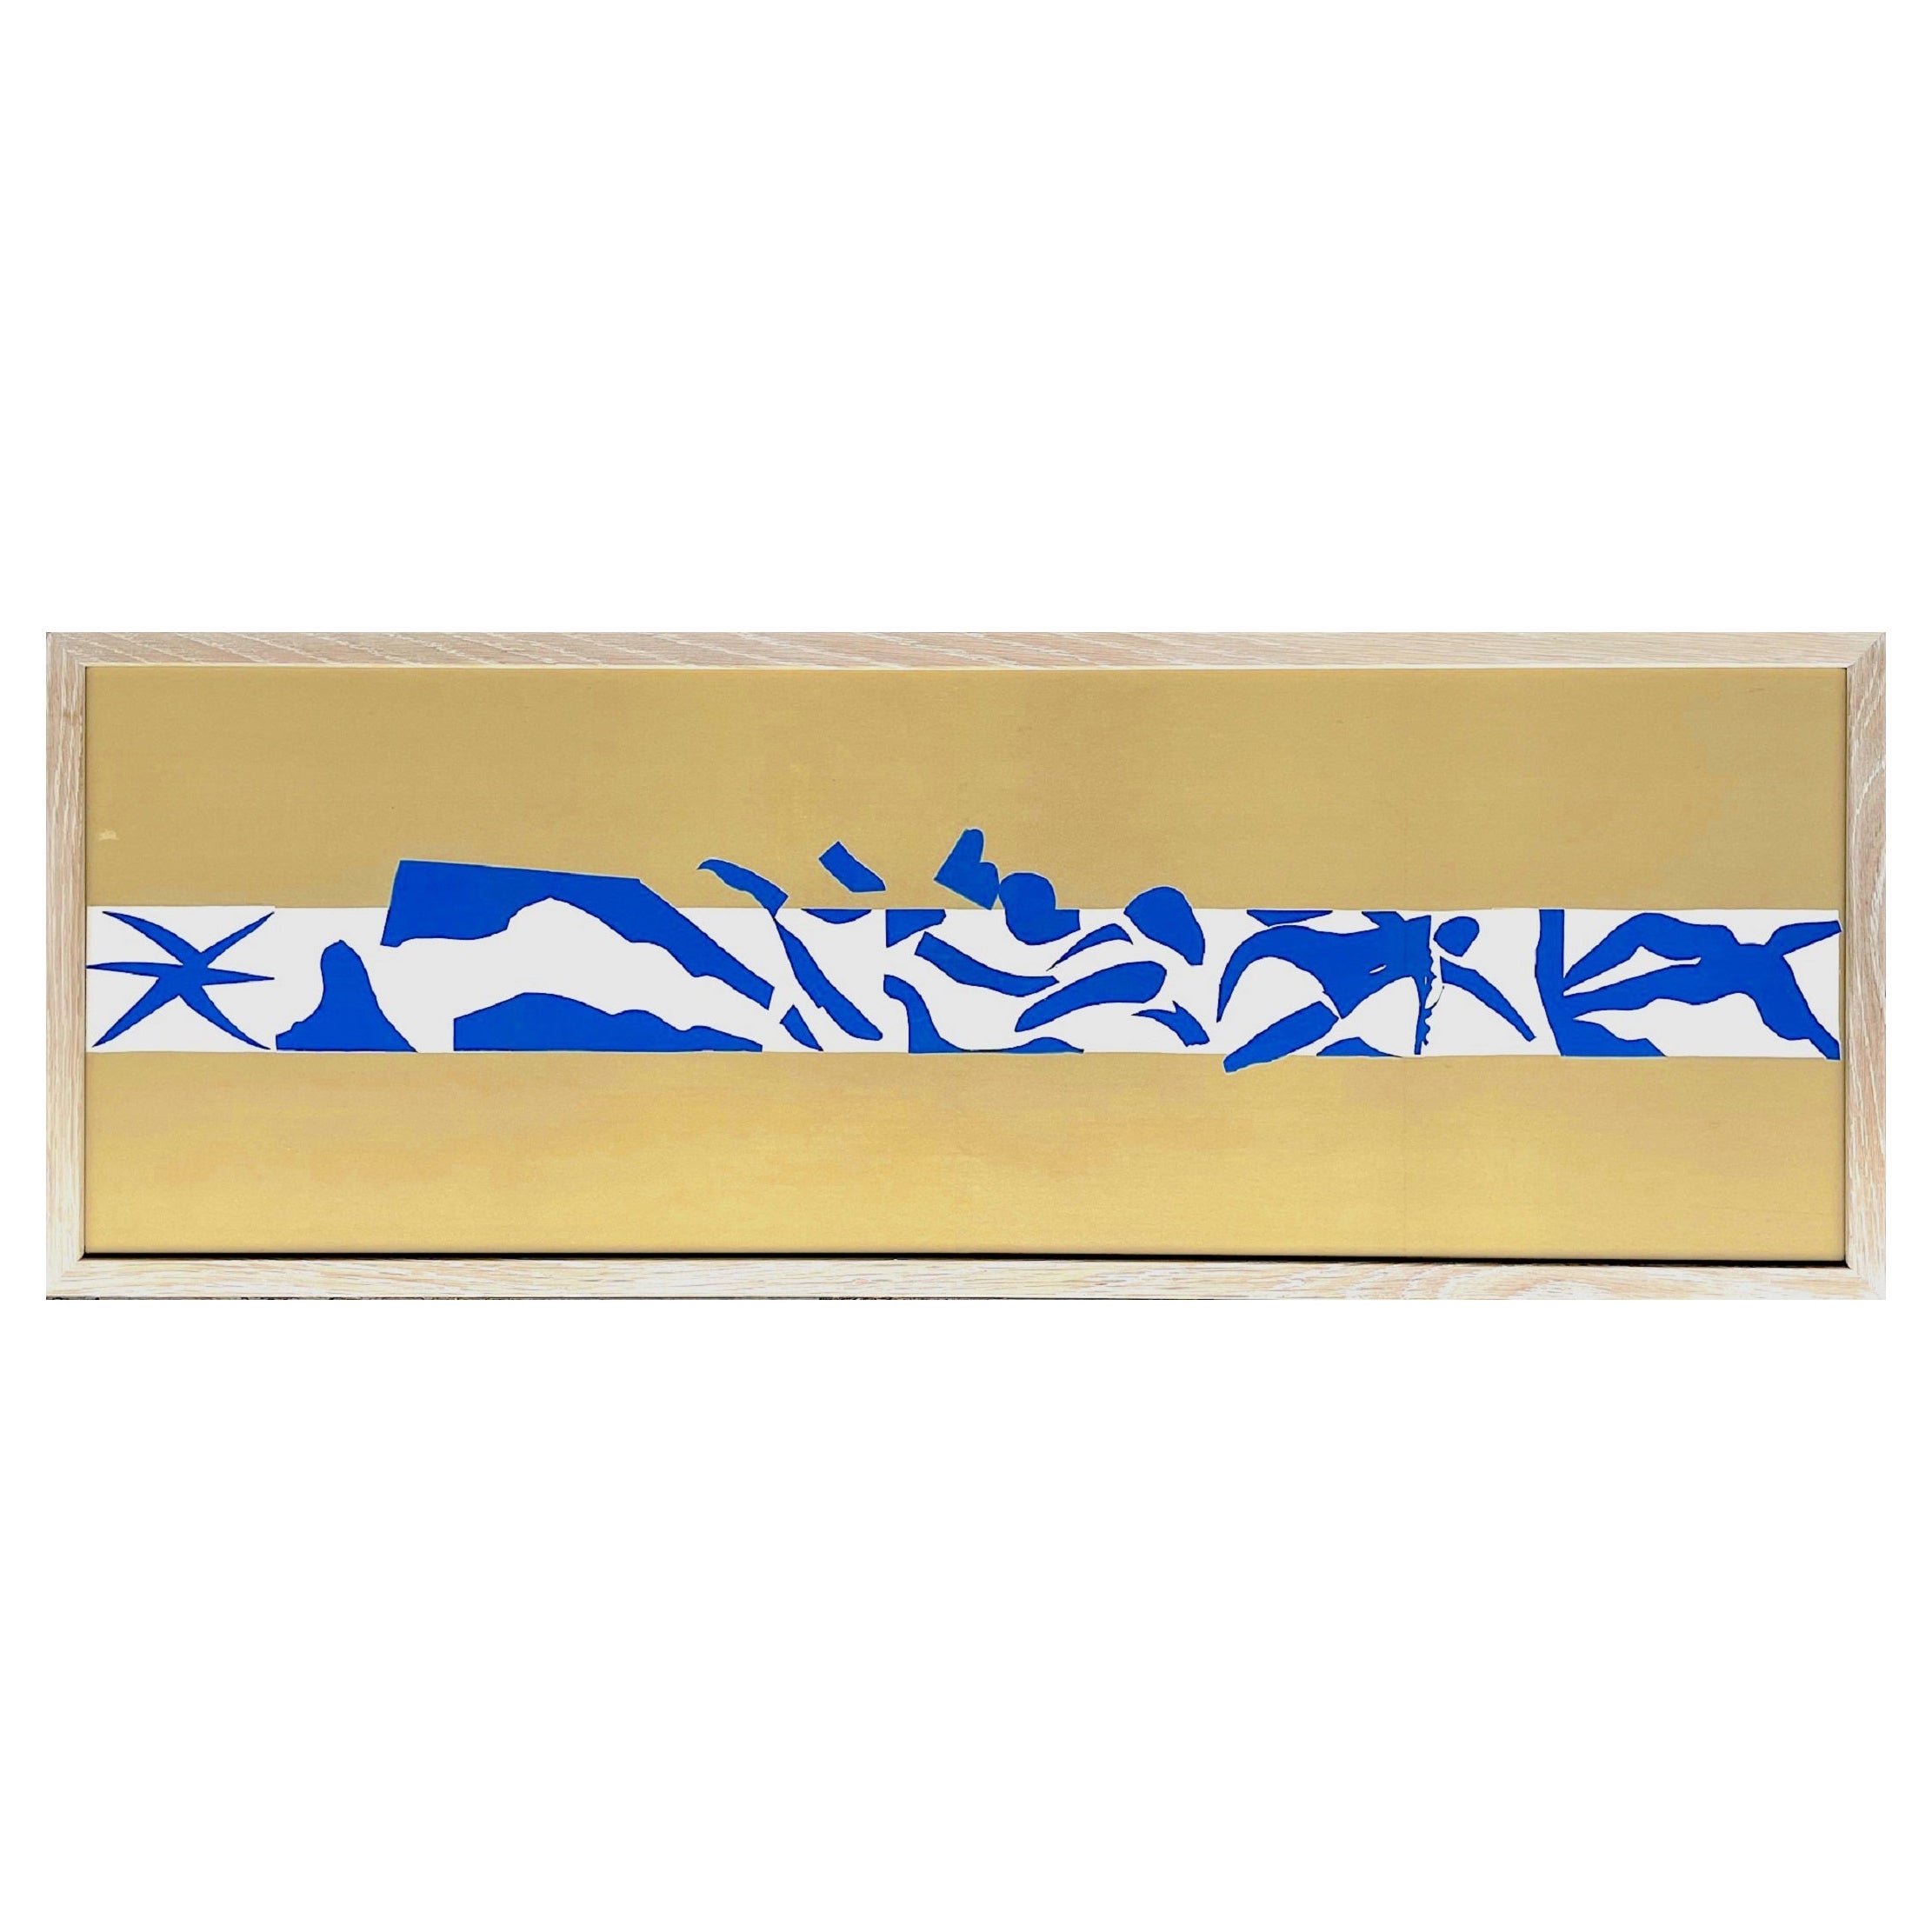 Henri Matisse "La Piscine Panel A" Orignal Lithograph, 1954 by Mourlot Freres